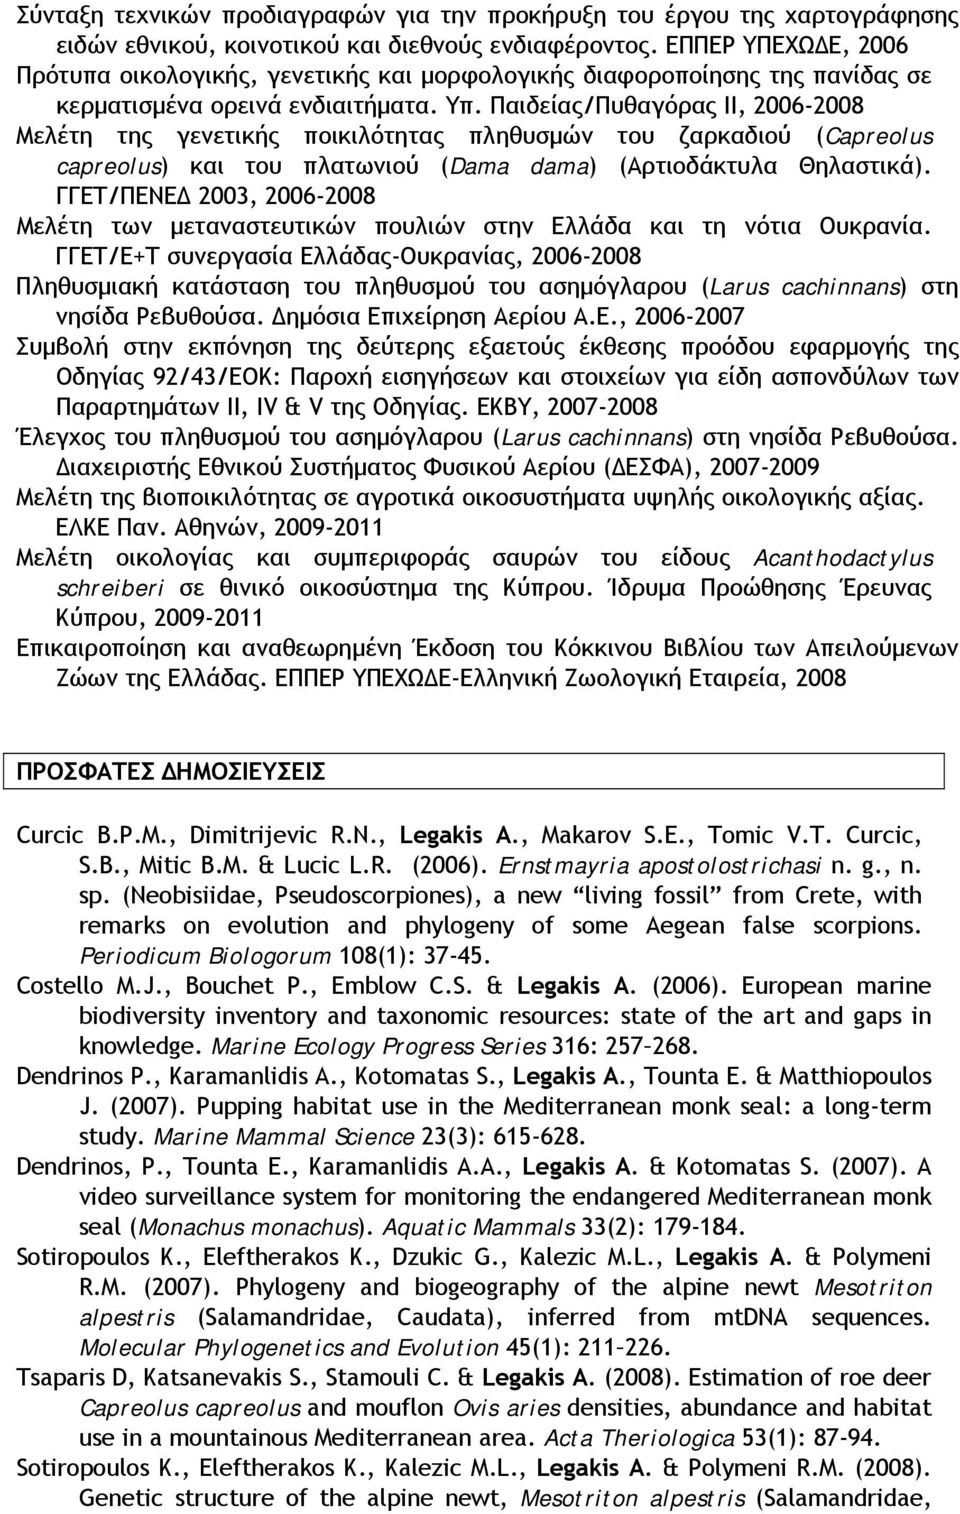 Παιδείας/Πυθαγόρας ΙΙ, 2006-2008 Μελέτη της γενετικής ποικιλότητας πληθυσμών του ζαρκαδιού (Capreolus capreolus) και του πλατωνιού (Dama dama) (Αρτιοδάκτυλα Θηλαστικά).